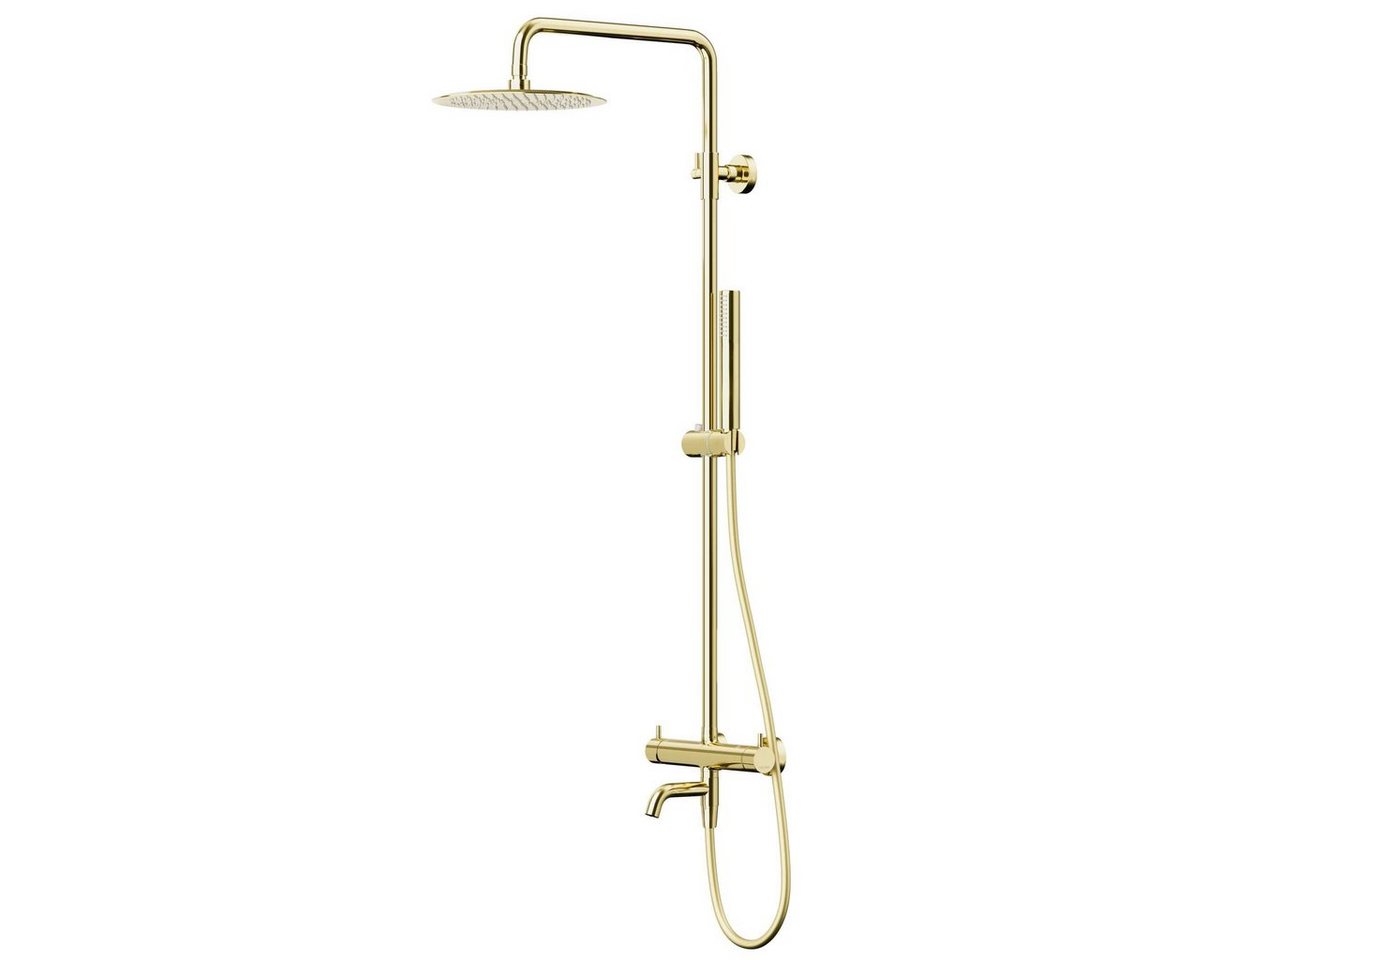 KOLMAN Duschsystem LUGO Brausegarnitur Regendusche mit Aushlauf in Gold, Höhe 180 cm, in Gold von KOLMAN